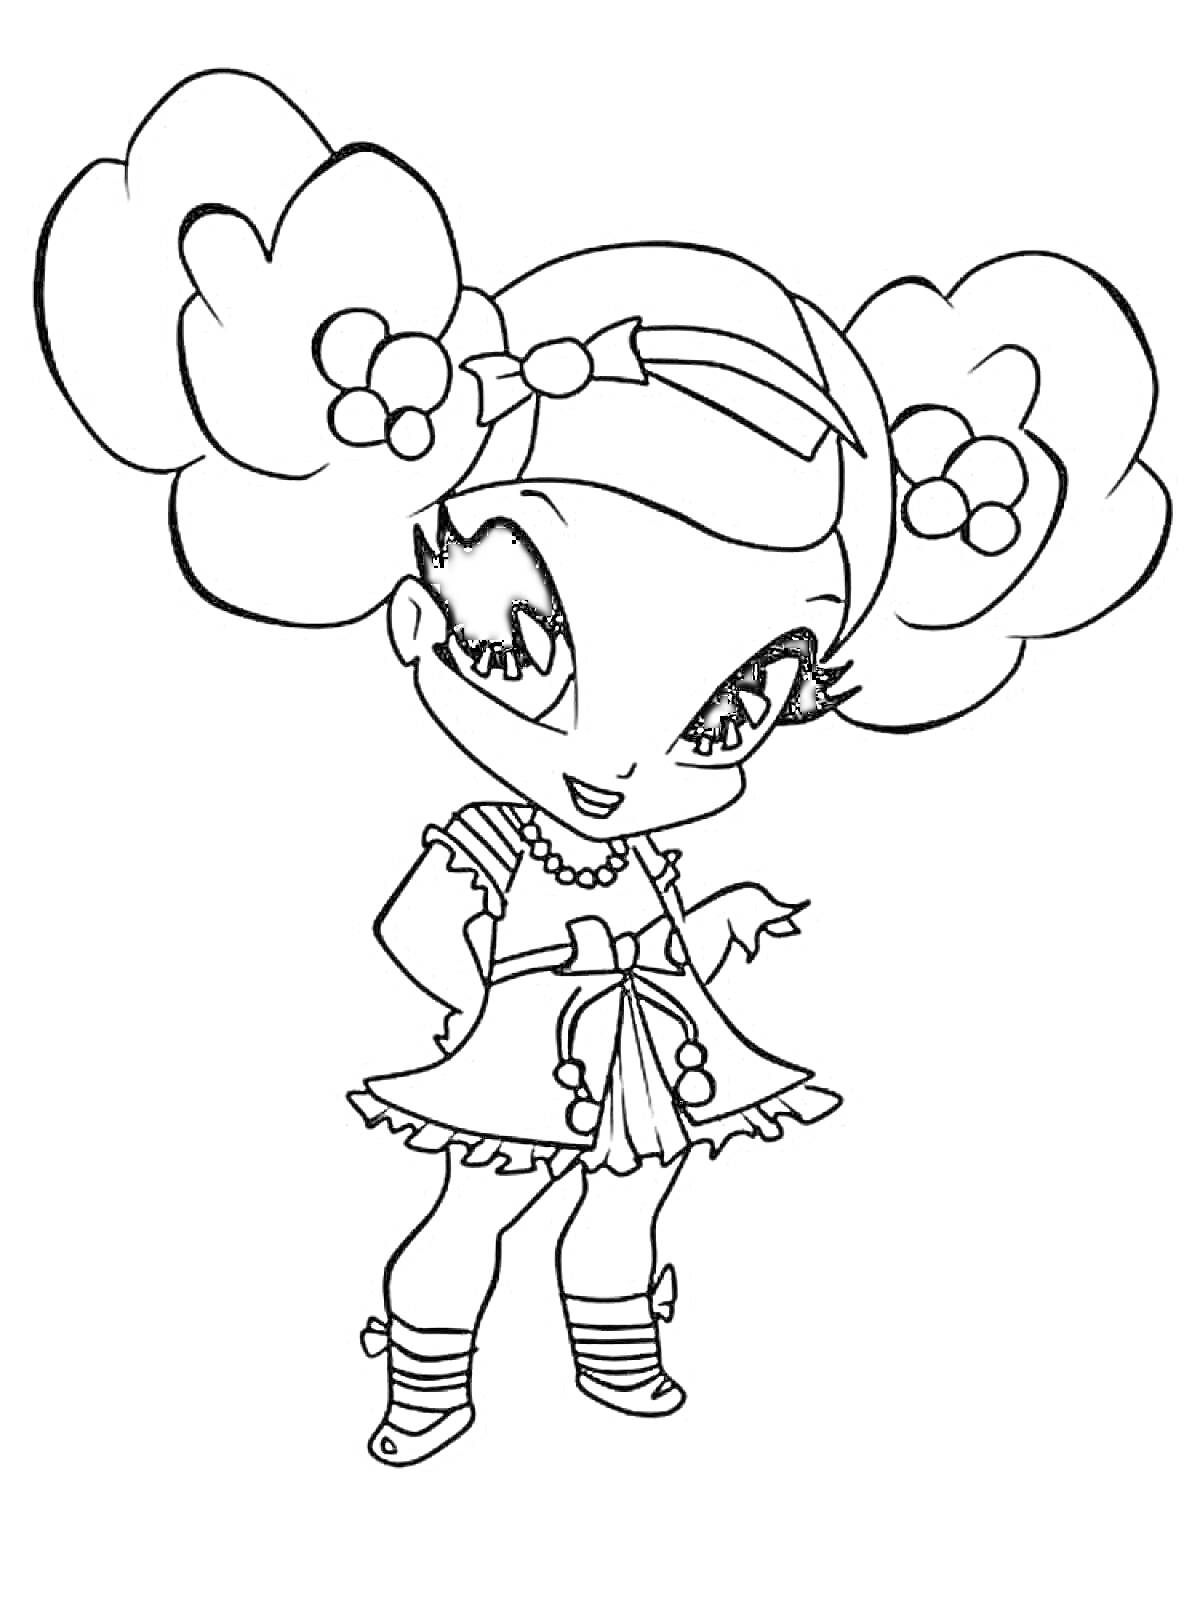 Раскраска Пикси с большими глазами, двумя пышными прическами с цветами, в платье и на каблуках